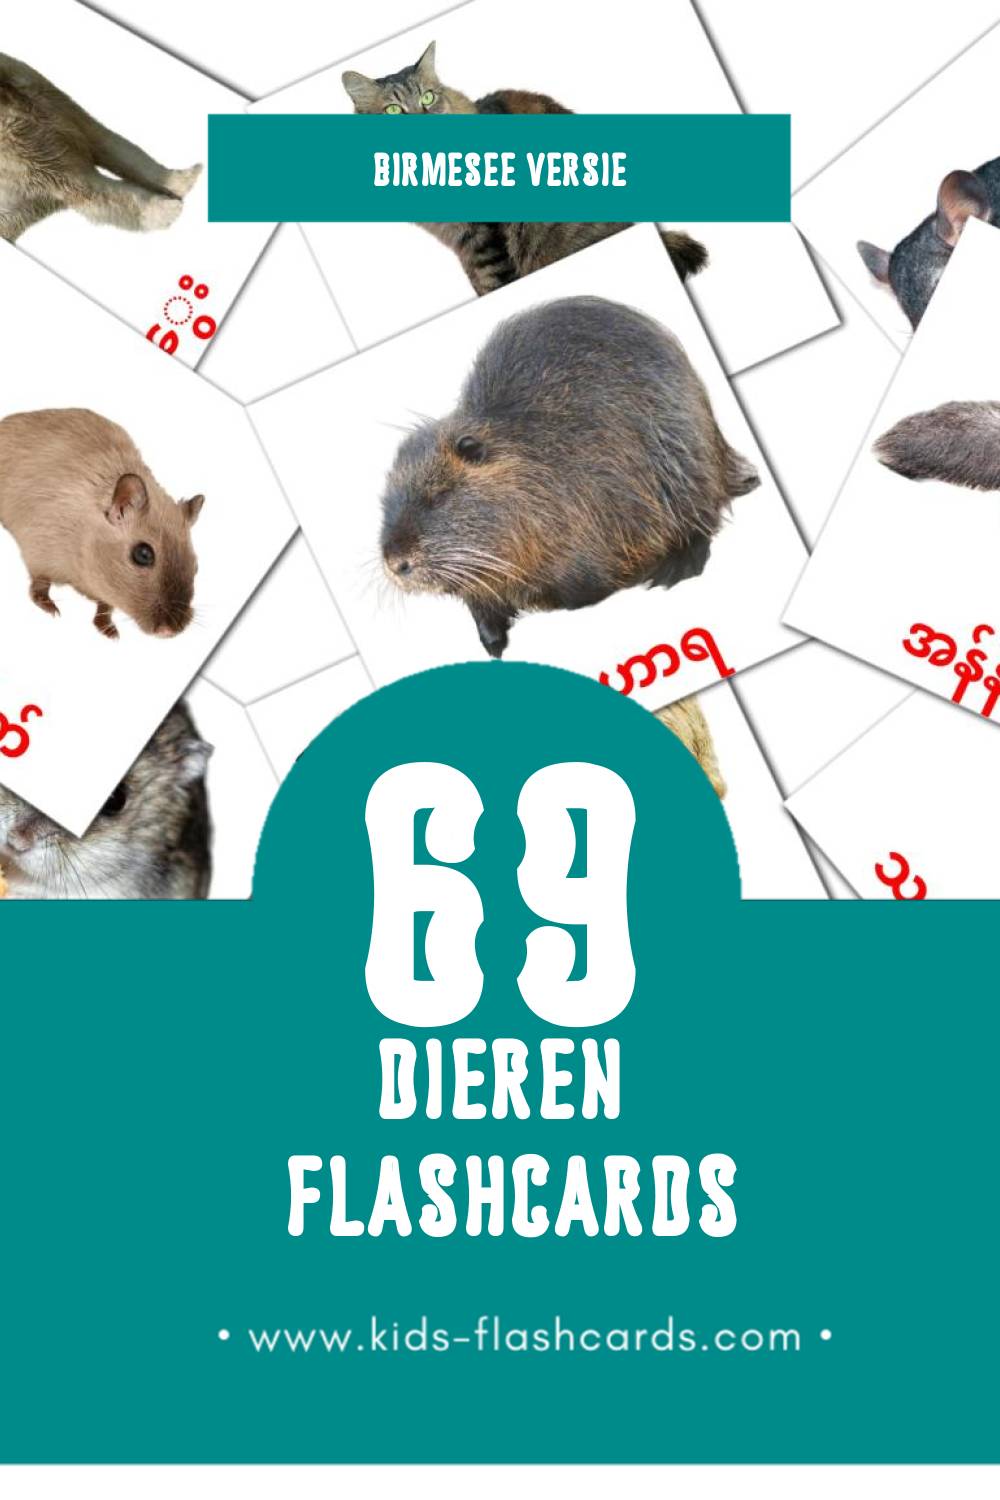 Visuele တိရစ္ဆာန်များ Flashcards voor Kleuters (69 kaarten in het Birmese)